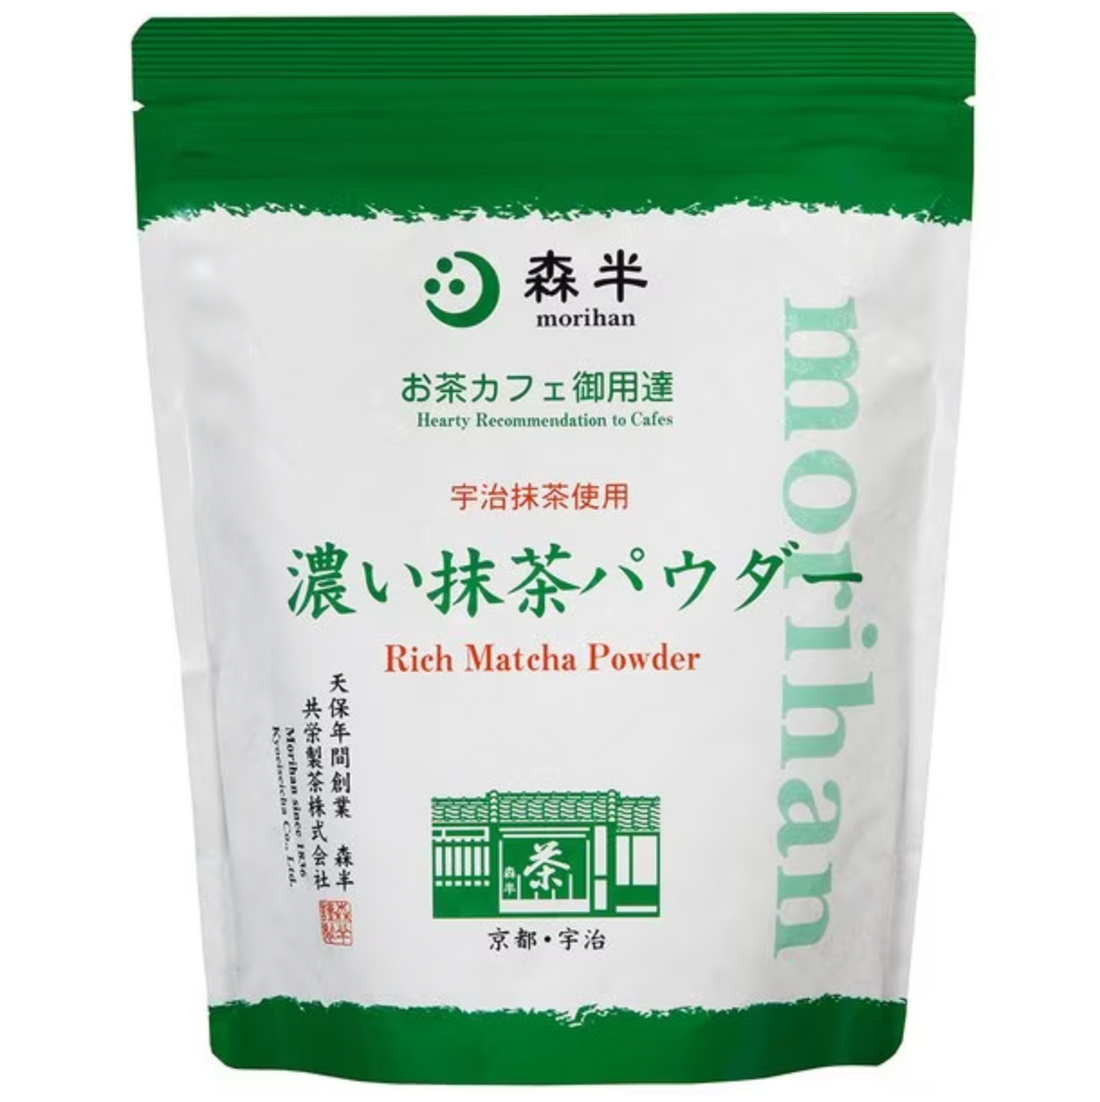 Morihan Hankoi Matcha Powder 500g